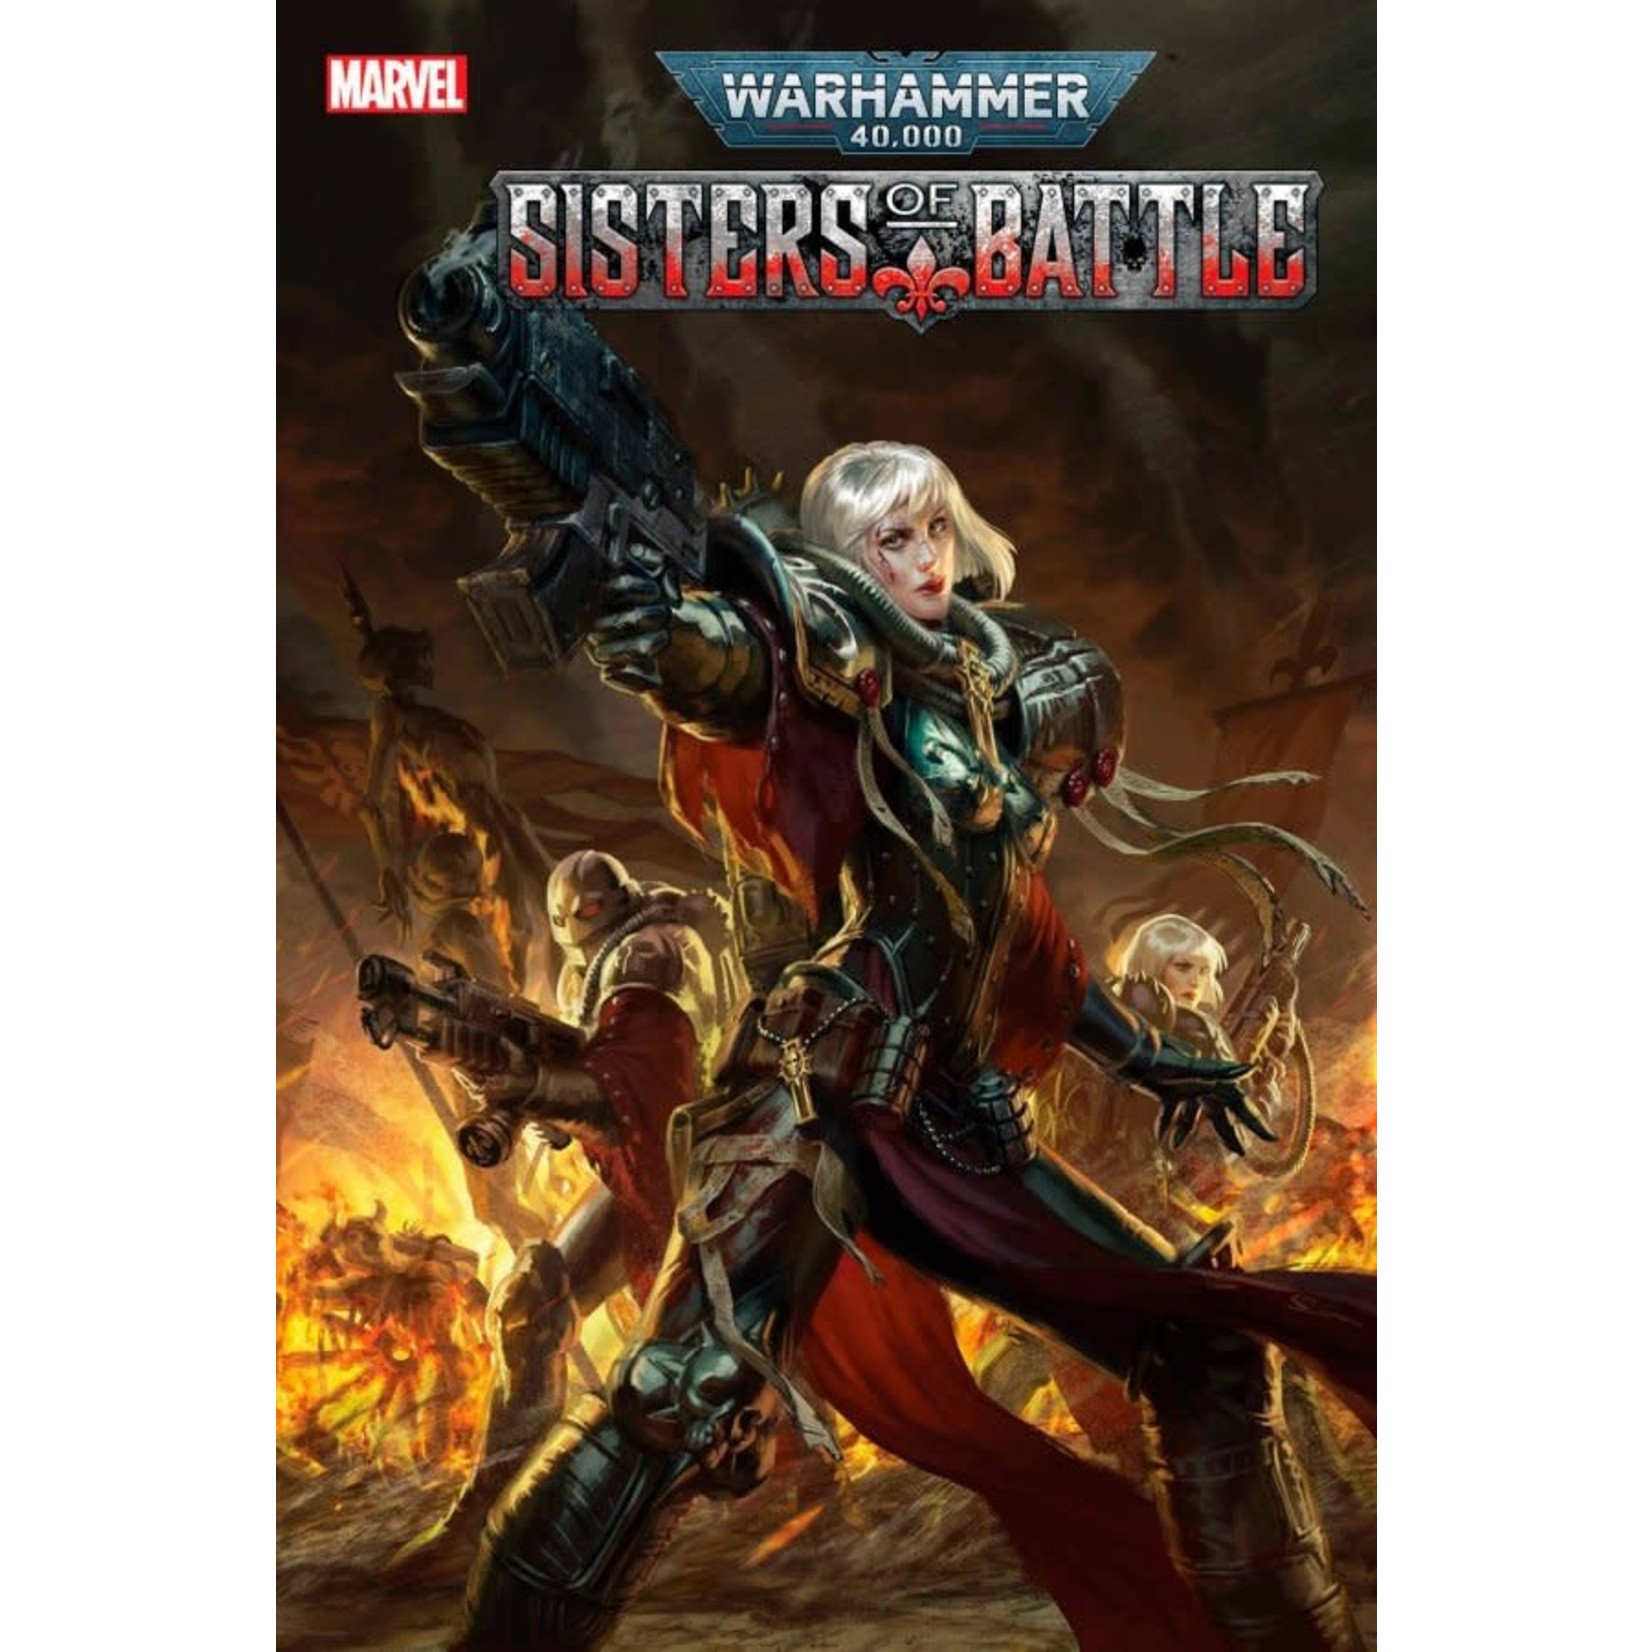 Marvel pack Noel Warhammer 40,000: Sisters of Battle 1-4